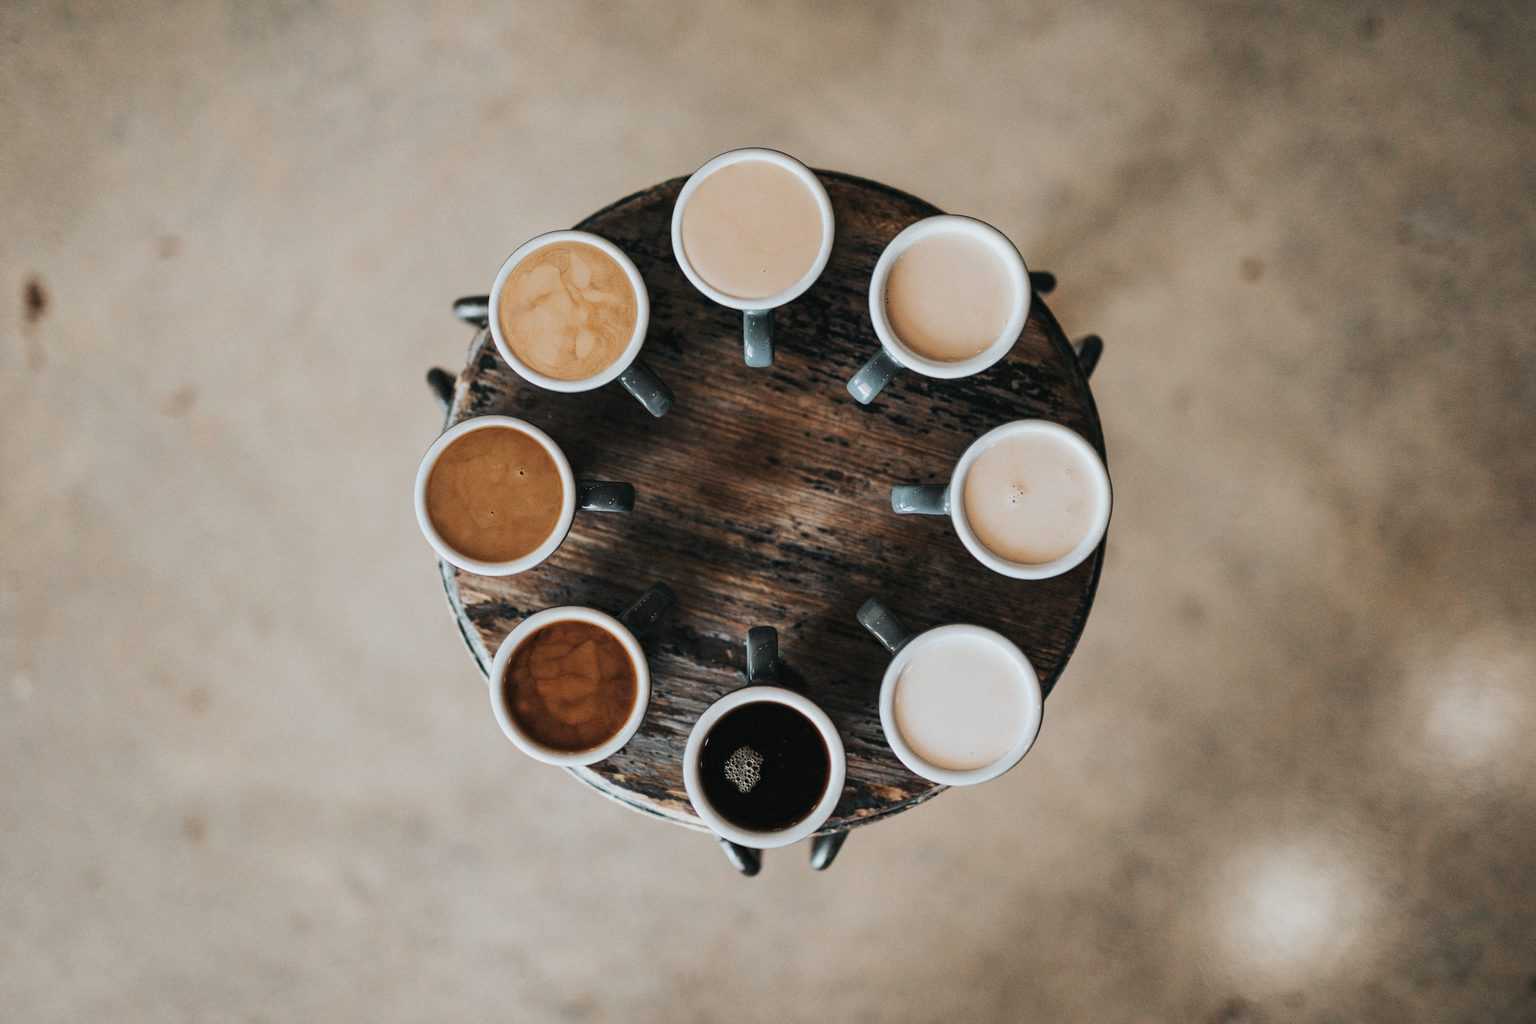 Meilleurs sirops de café : un guide pour égayer vos boissons